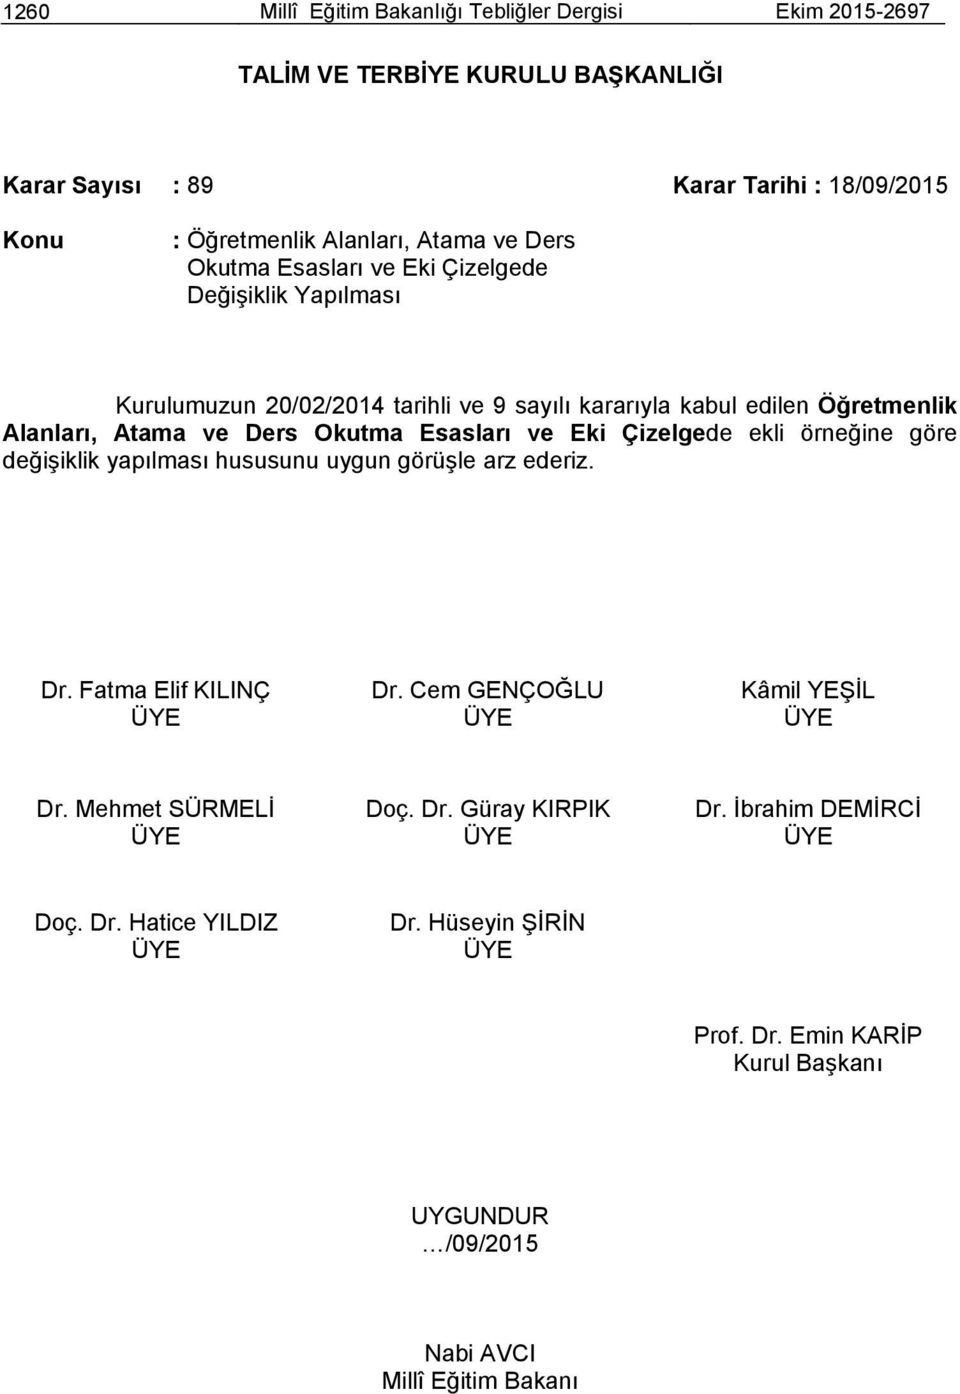 Kurulumuzun 20/02/2014 tarihli ve 9 sayılı kararıyla kabul edilen Öğretmenlik Alanları, Atama ve Ders